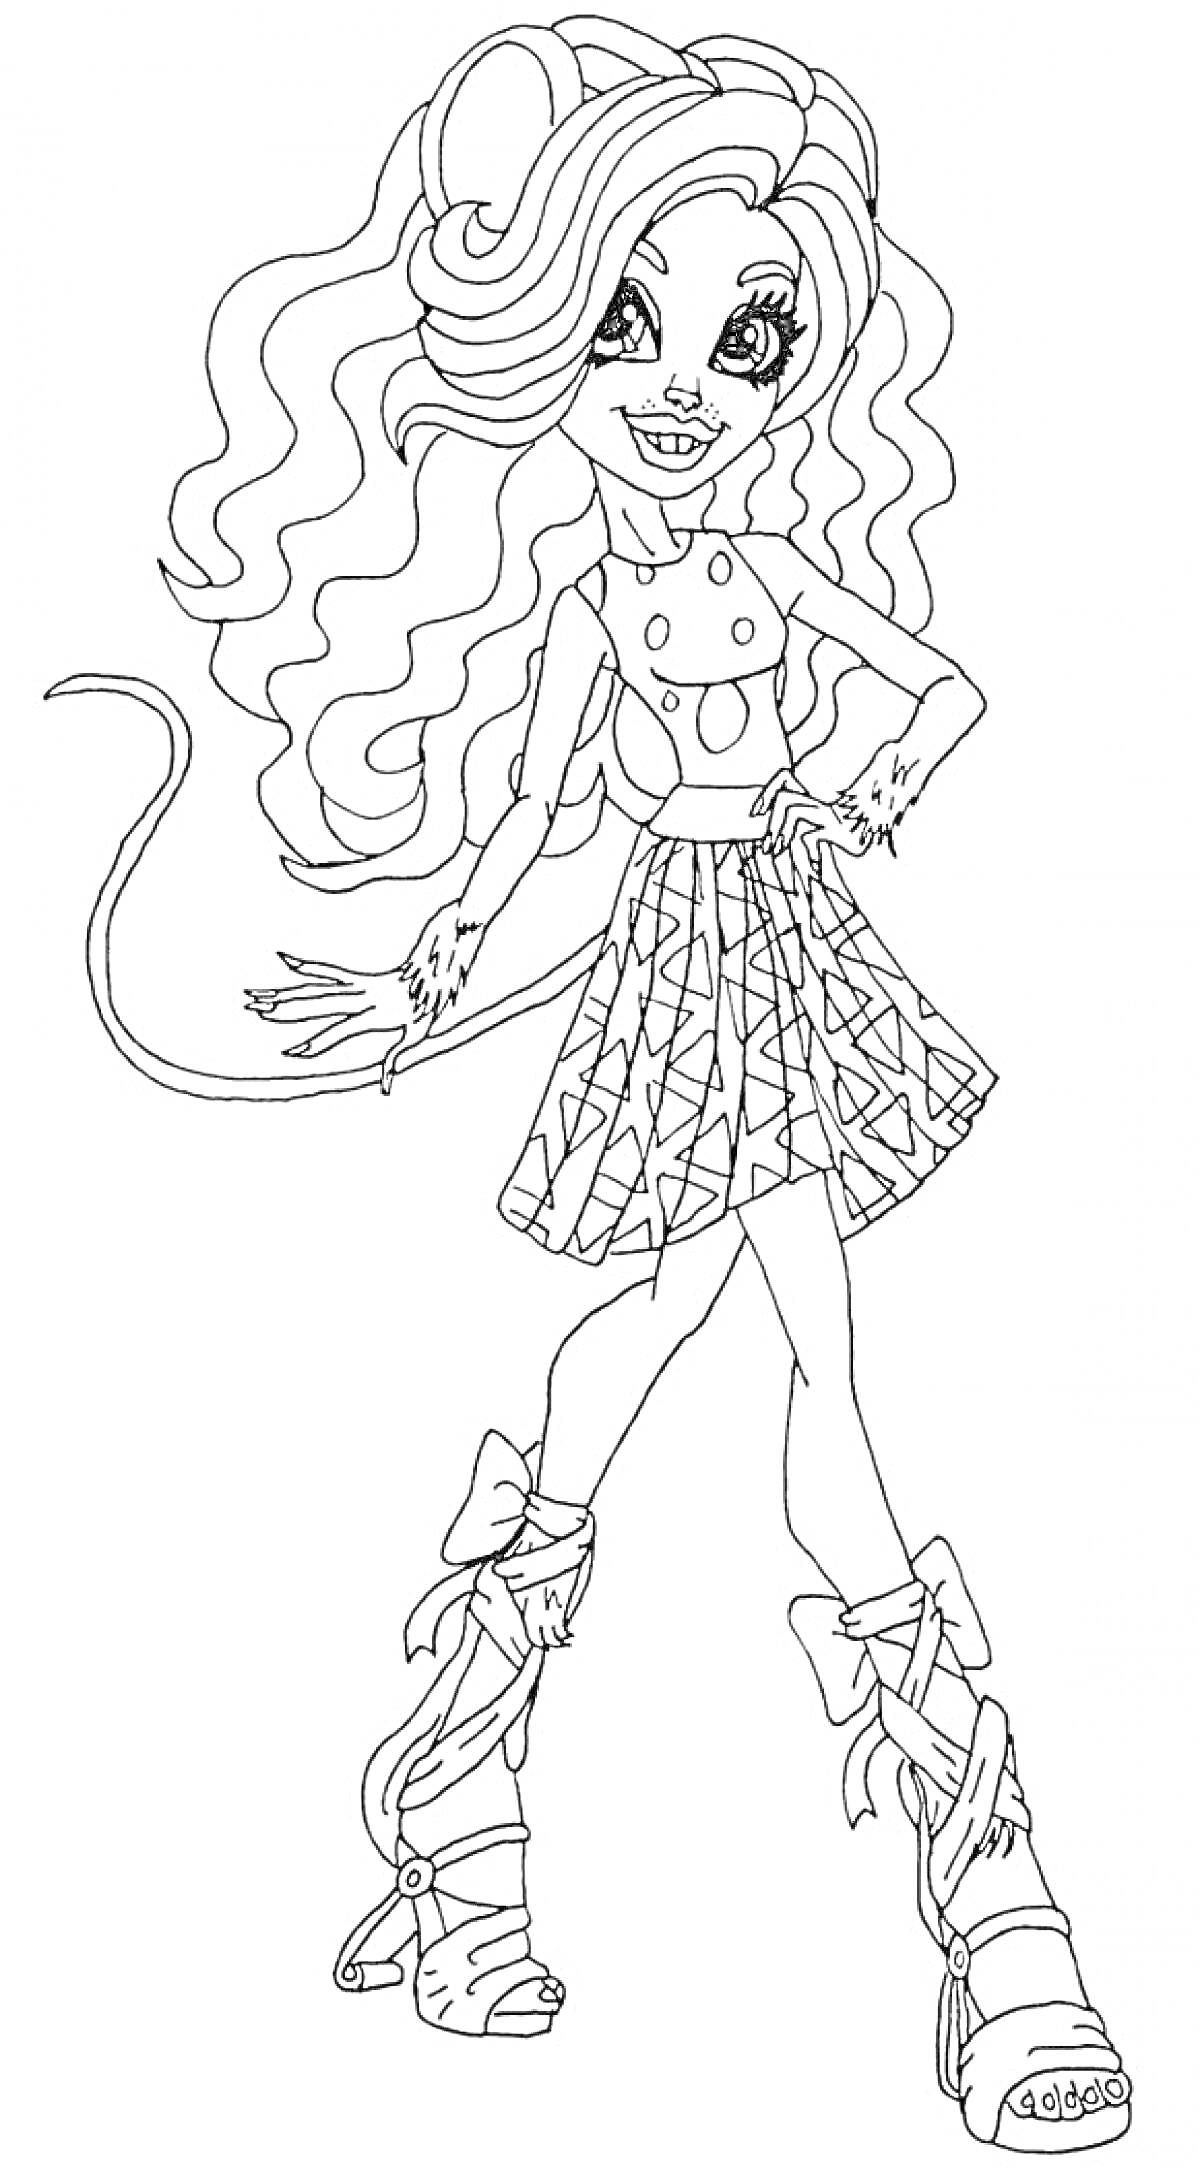 Раскраска Девушка с длинными волнистыми волосами, в топе без рукавов с пуговицами, юбке с узором, ботинках на шнуровке с бантиками и хвостом